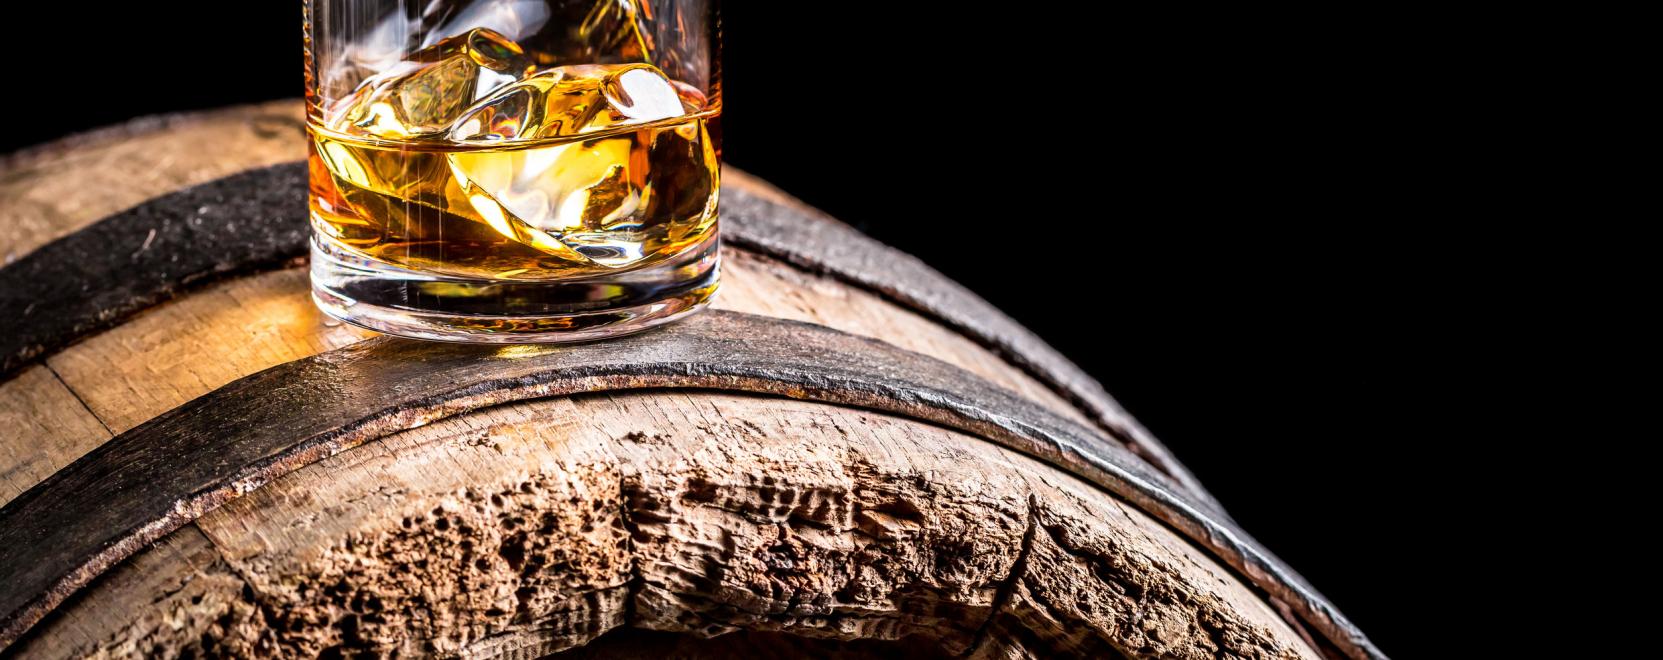 Mi a közös a whiskyben és a mesterséges intelligenciában?